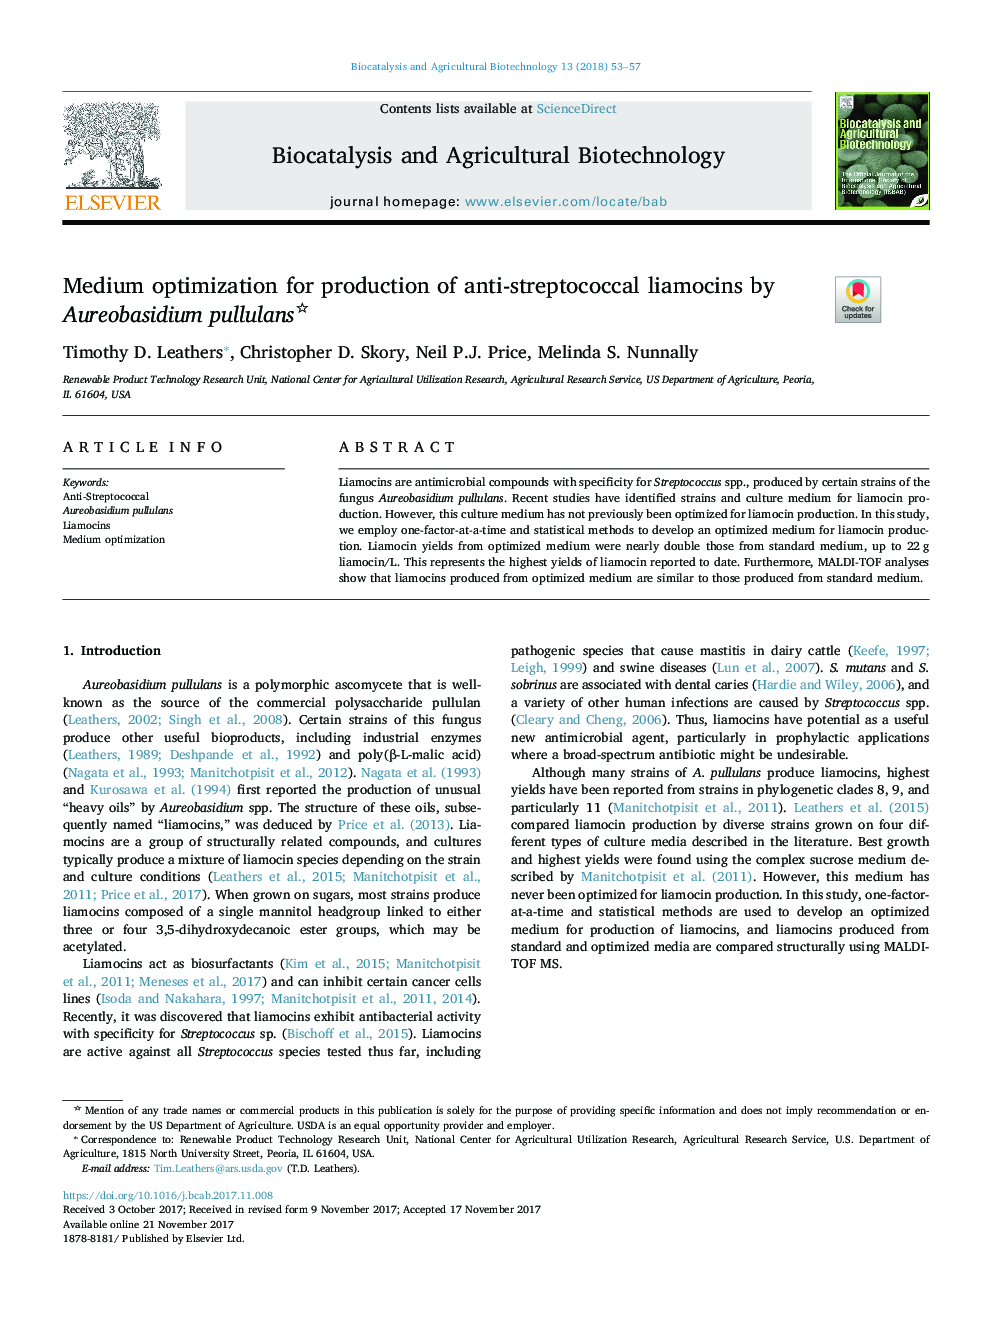 Medium optimization for production of anti-streptococcal liamocins by Aureobasidium pullulans